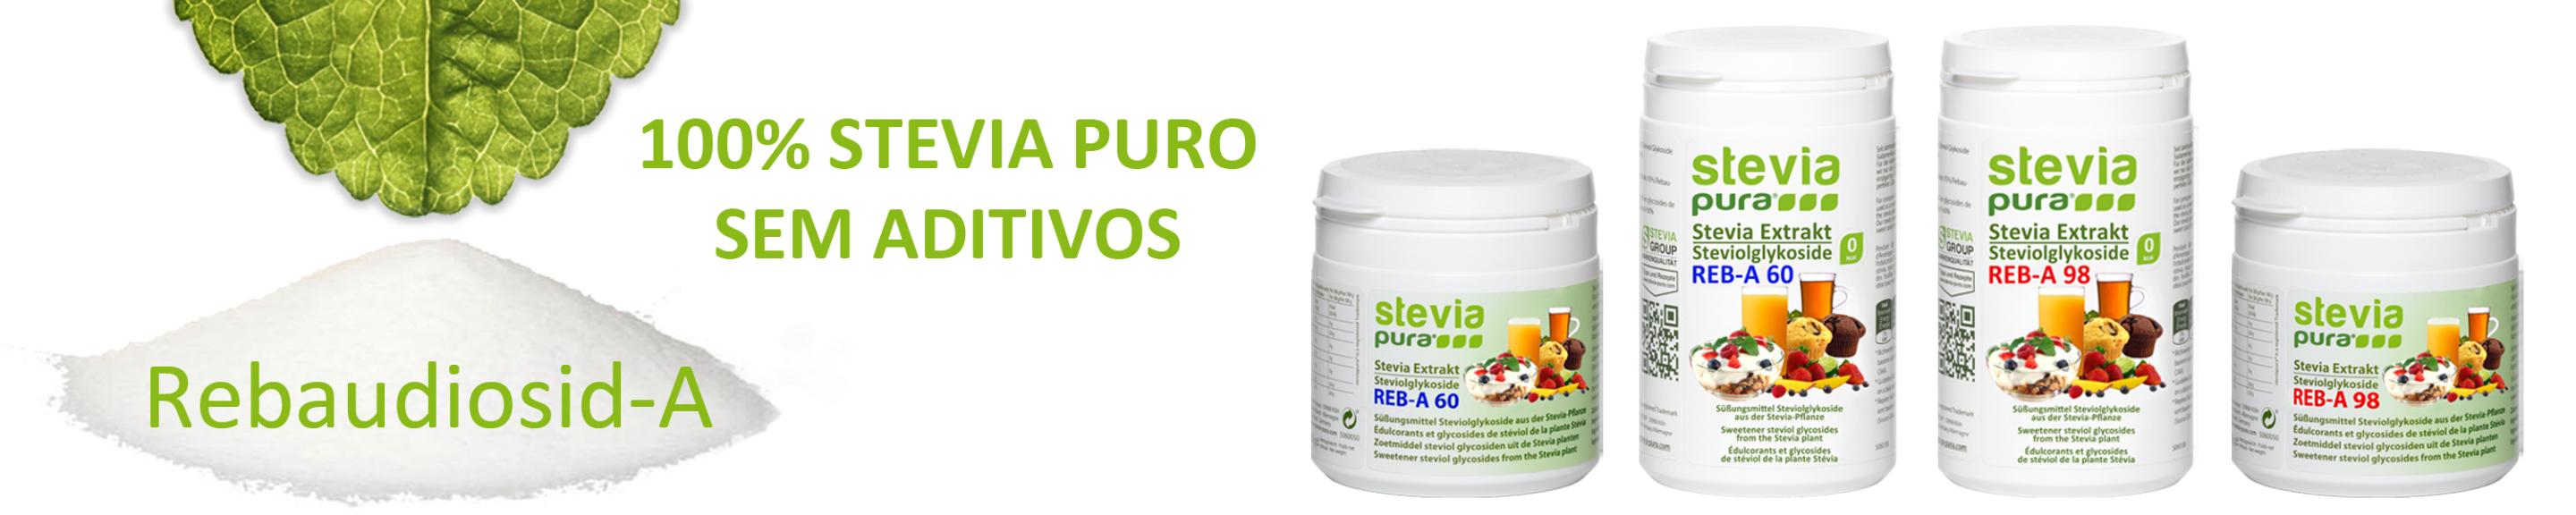 Comprar 100% Stevia Puro sem aditivos rebaudioside A98 %...